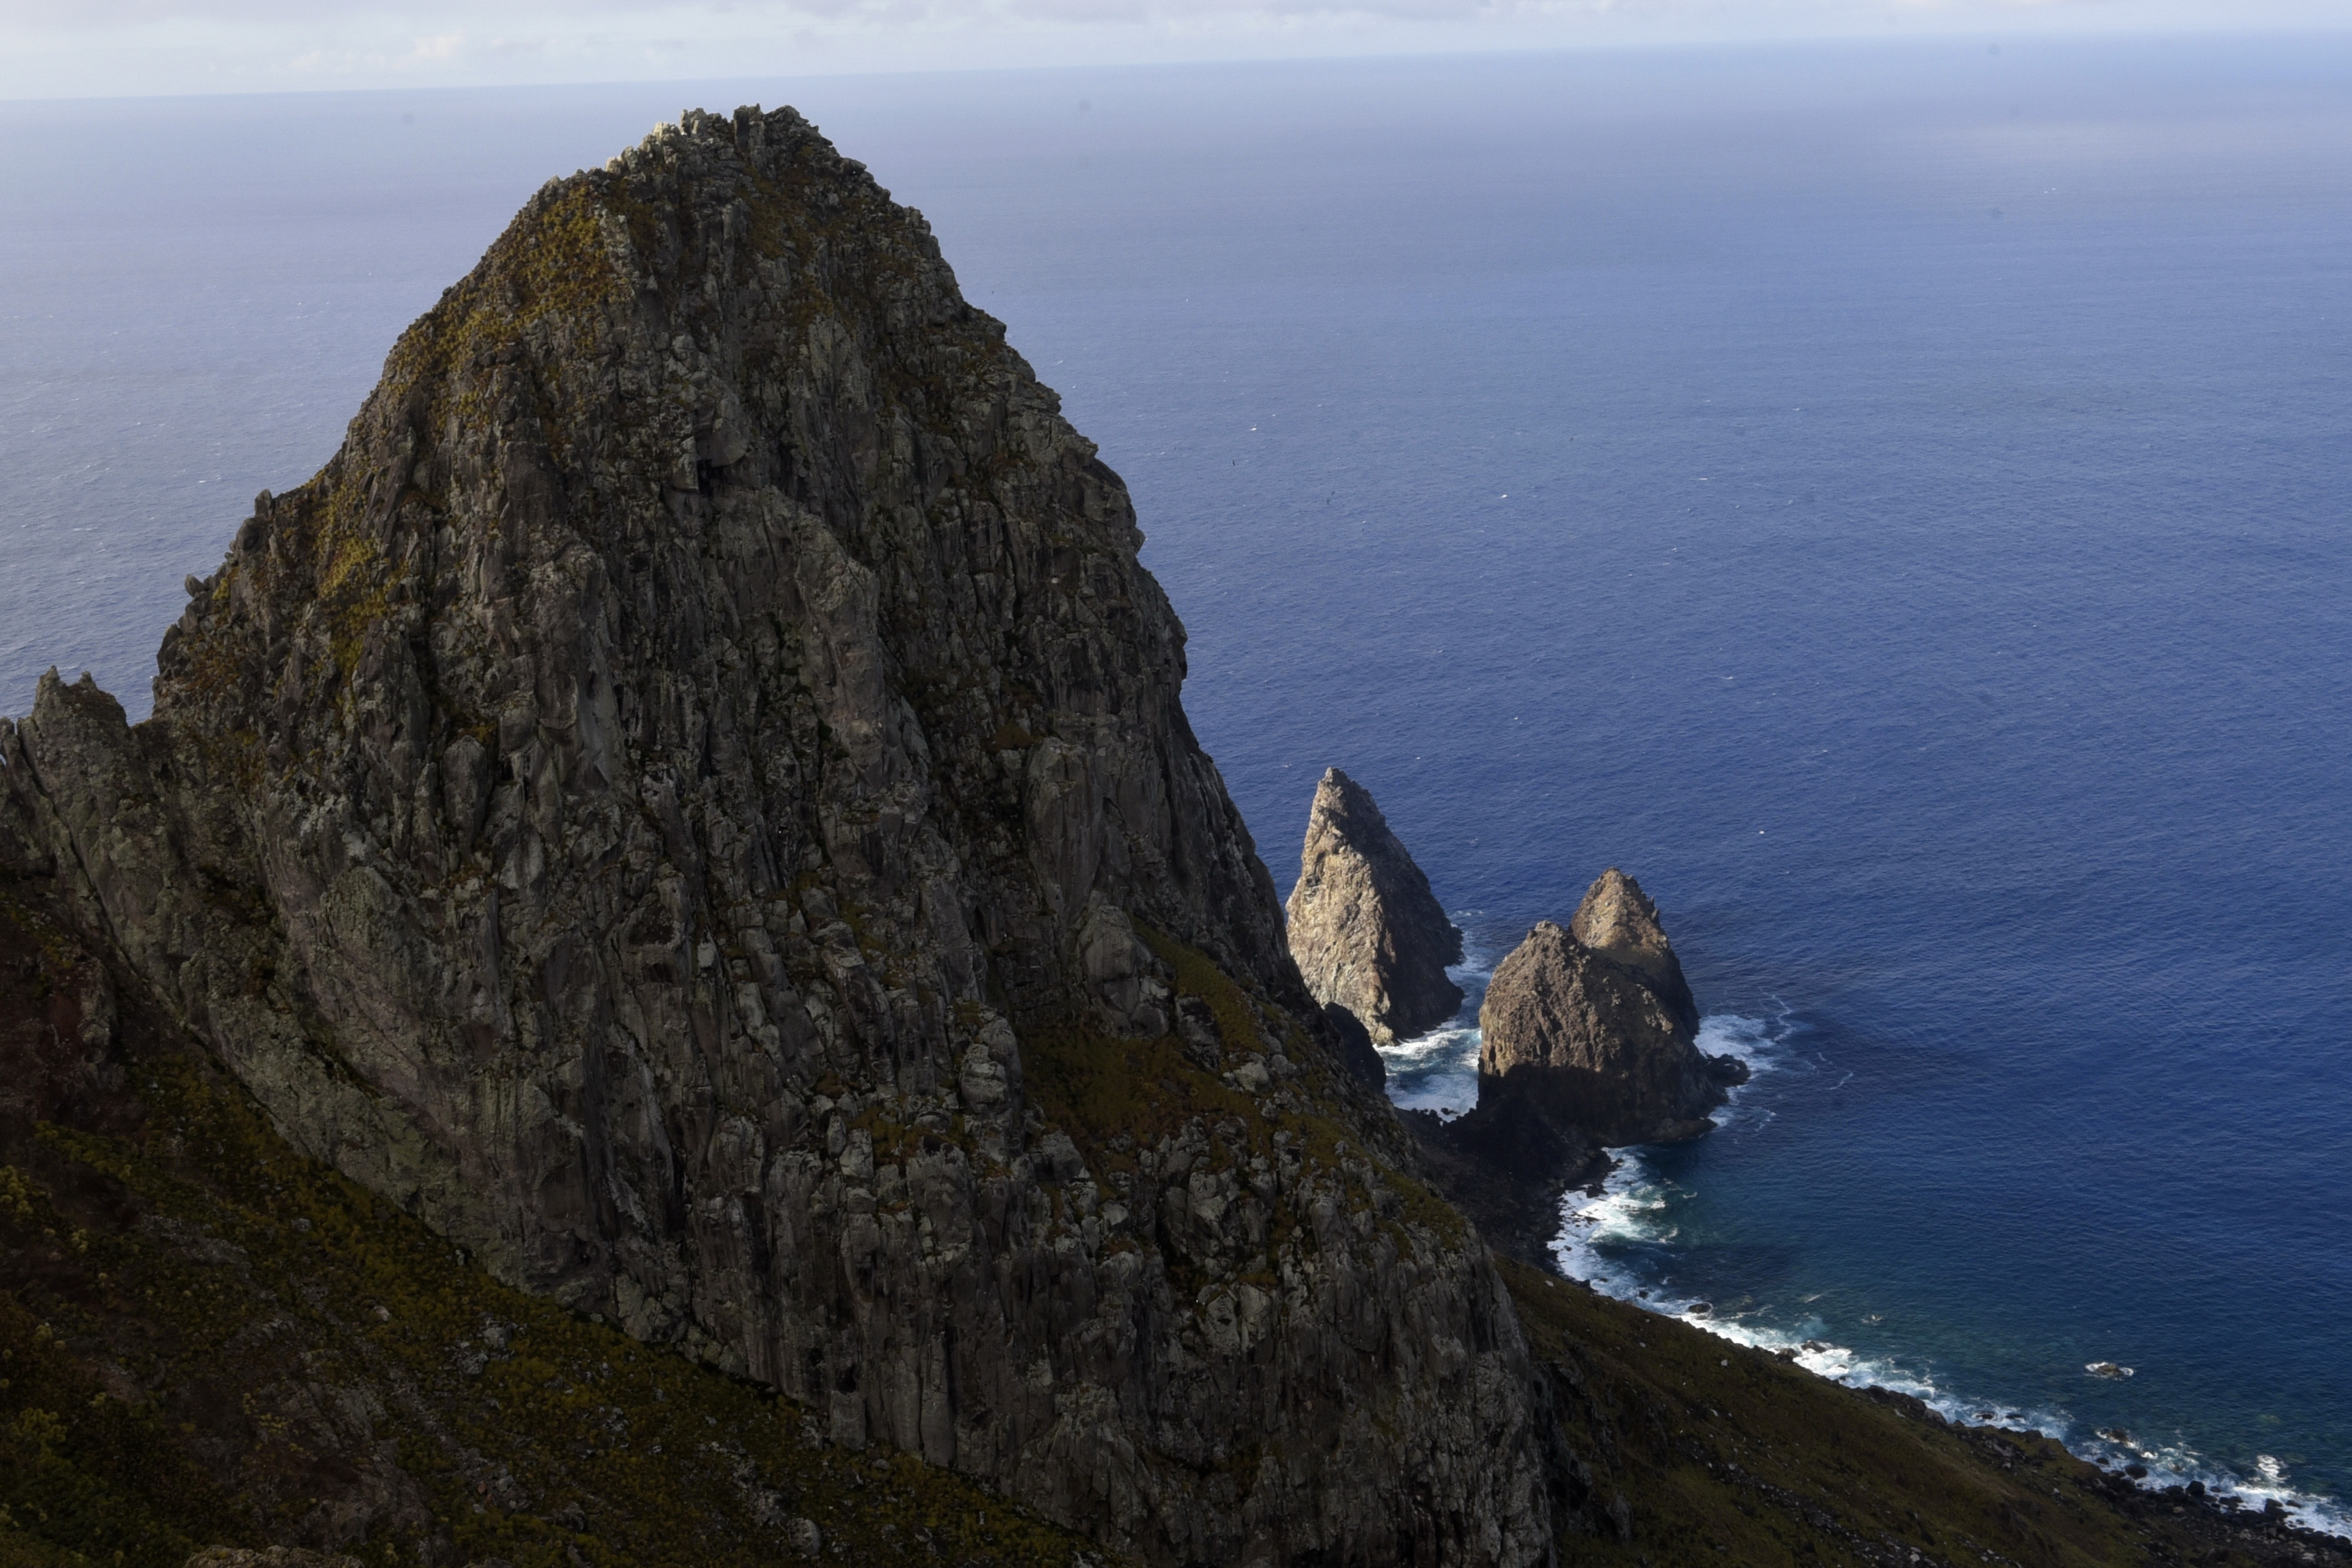 A Gazeta Expedição Trindade fotos mostram as belezas da ilha na costa do ES